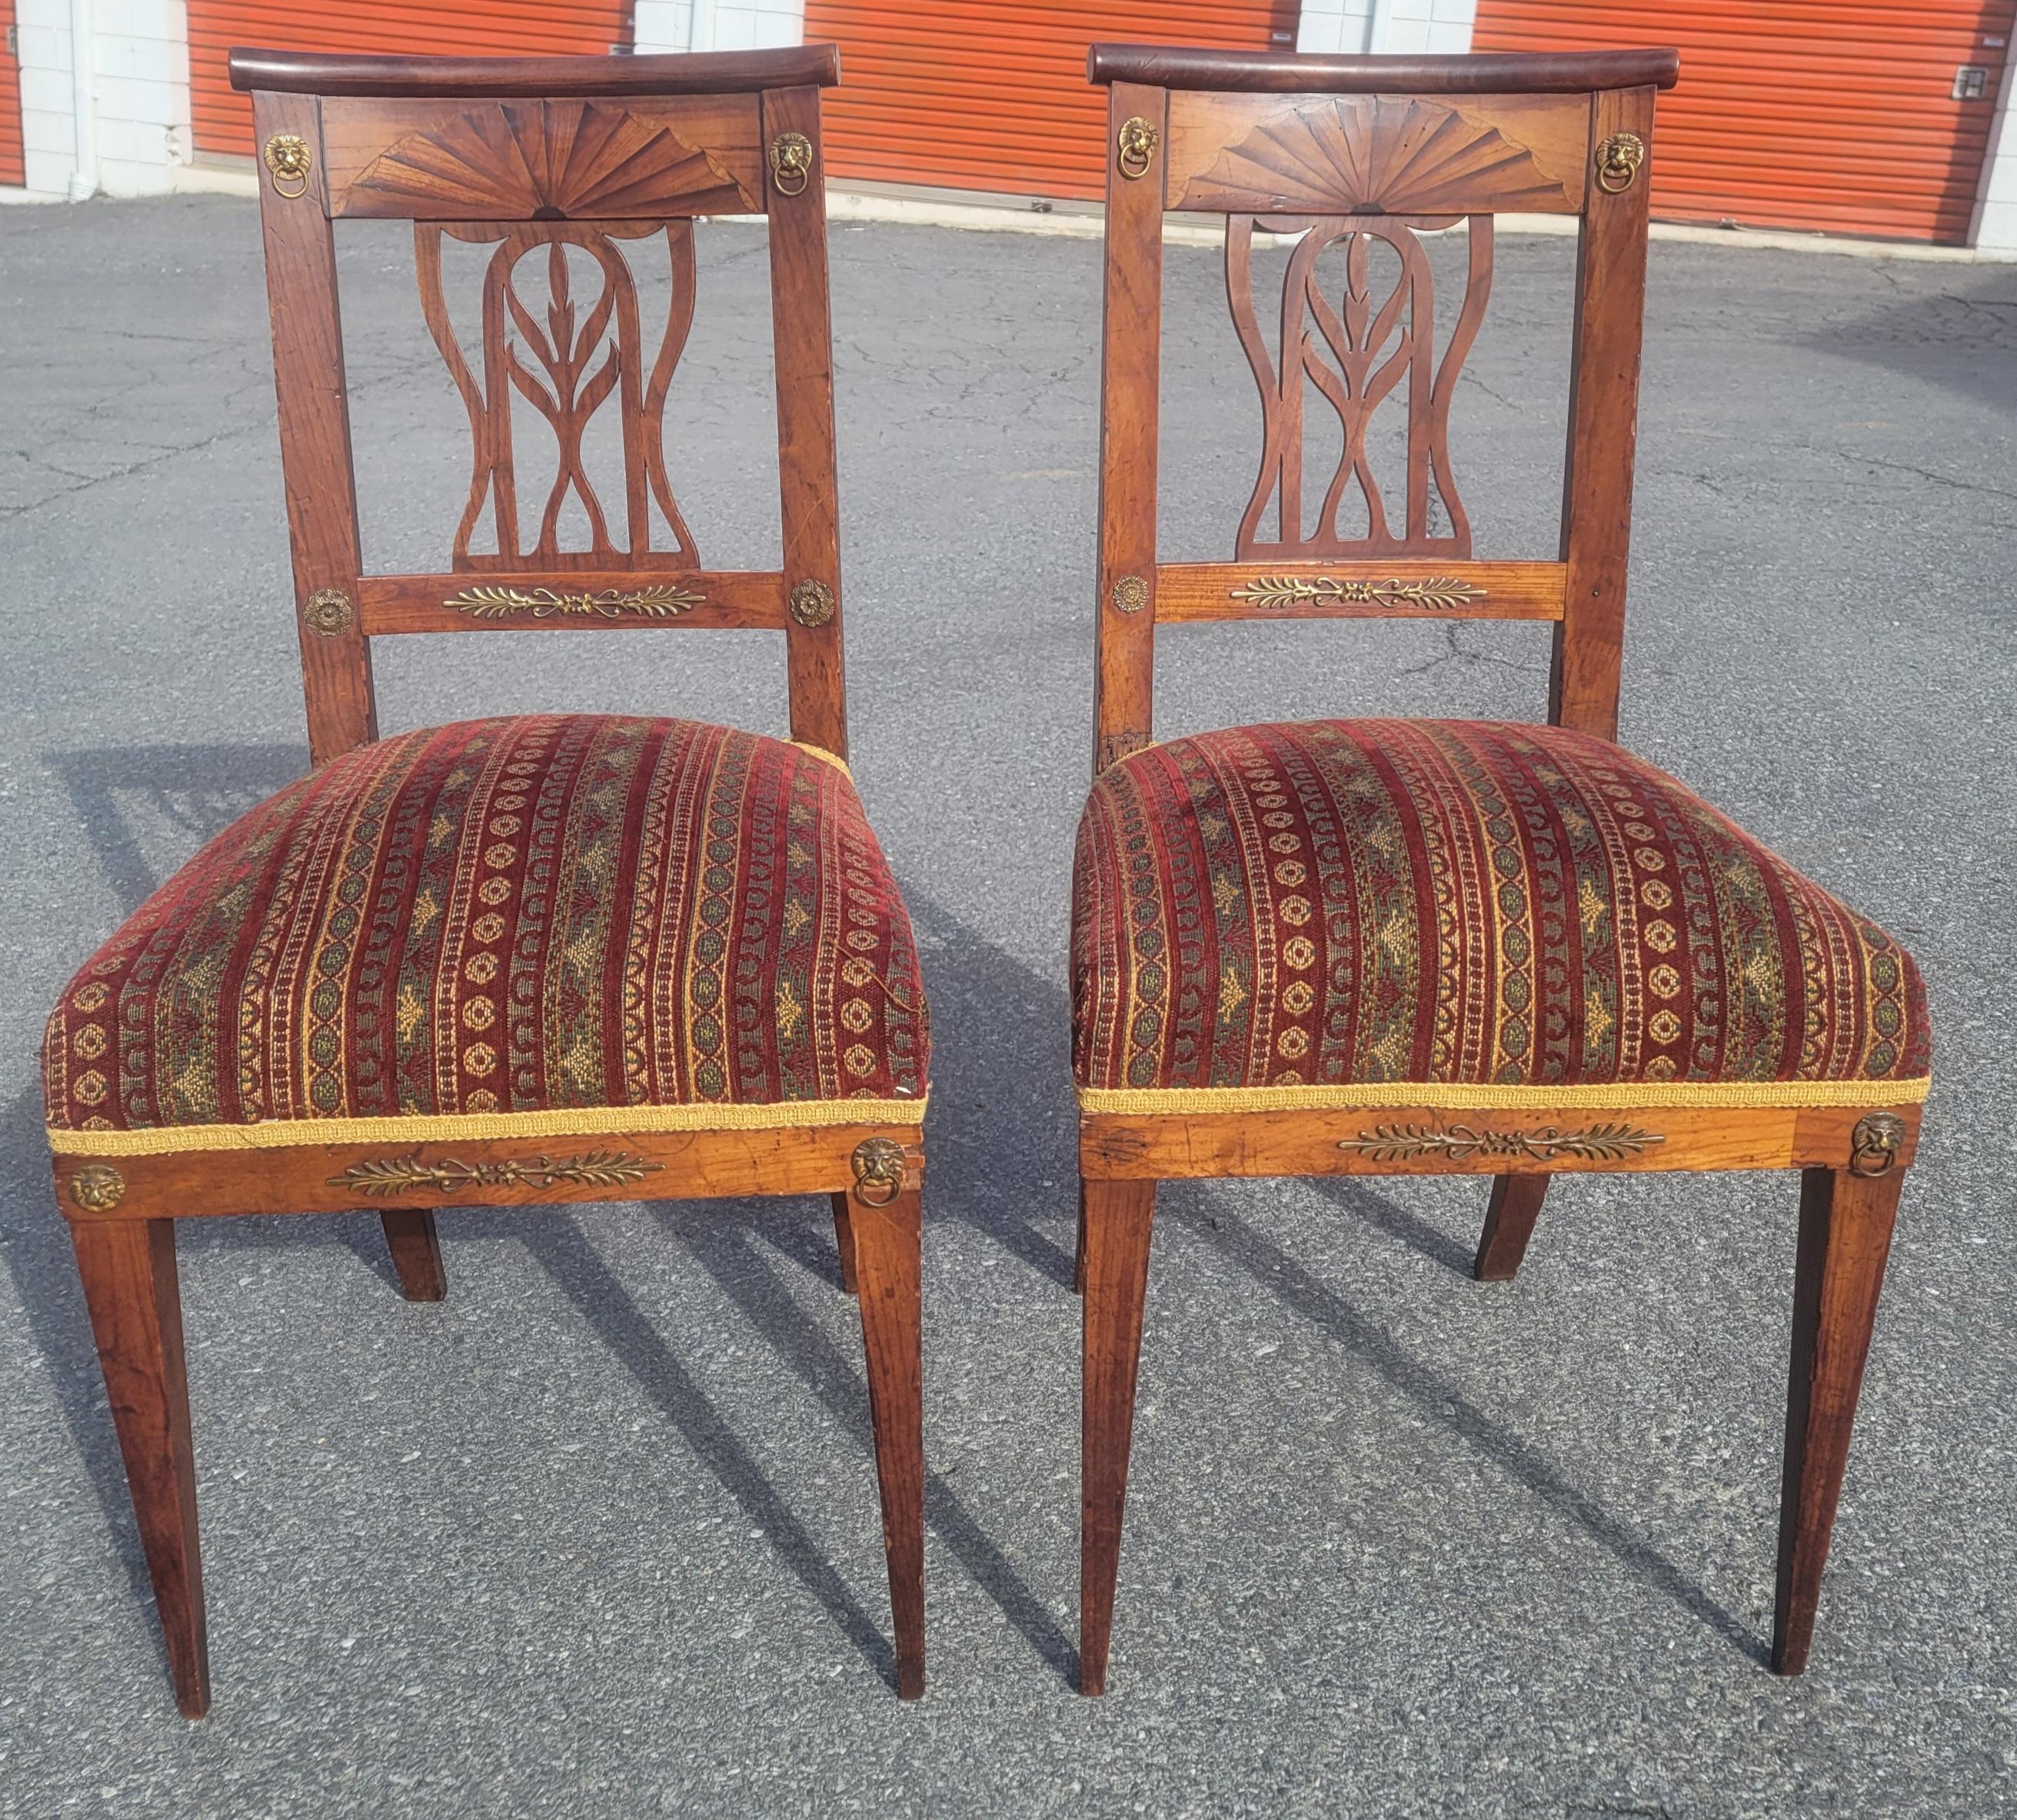 Ein prächtiges Paar  des 19. Jahrhunderts  Schwedische kontinentale Stühle mit Messing- und Intarsieneinlagen aus Kirschholz. Wunderschöne Intarsien- und Parkettarbeiten auf den Rückseiten. 
sehr bequeme, feste Sitze mit Federn. Polstermöbel in sehr